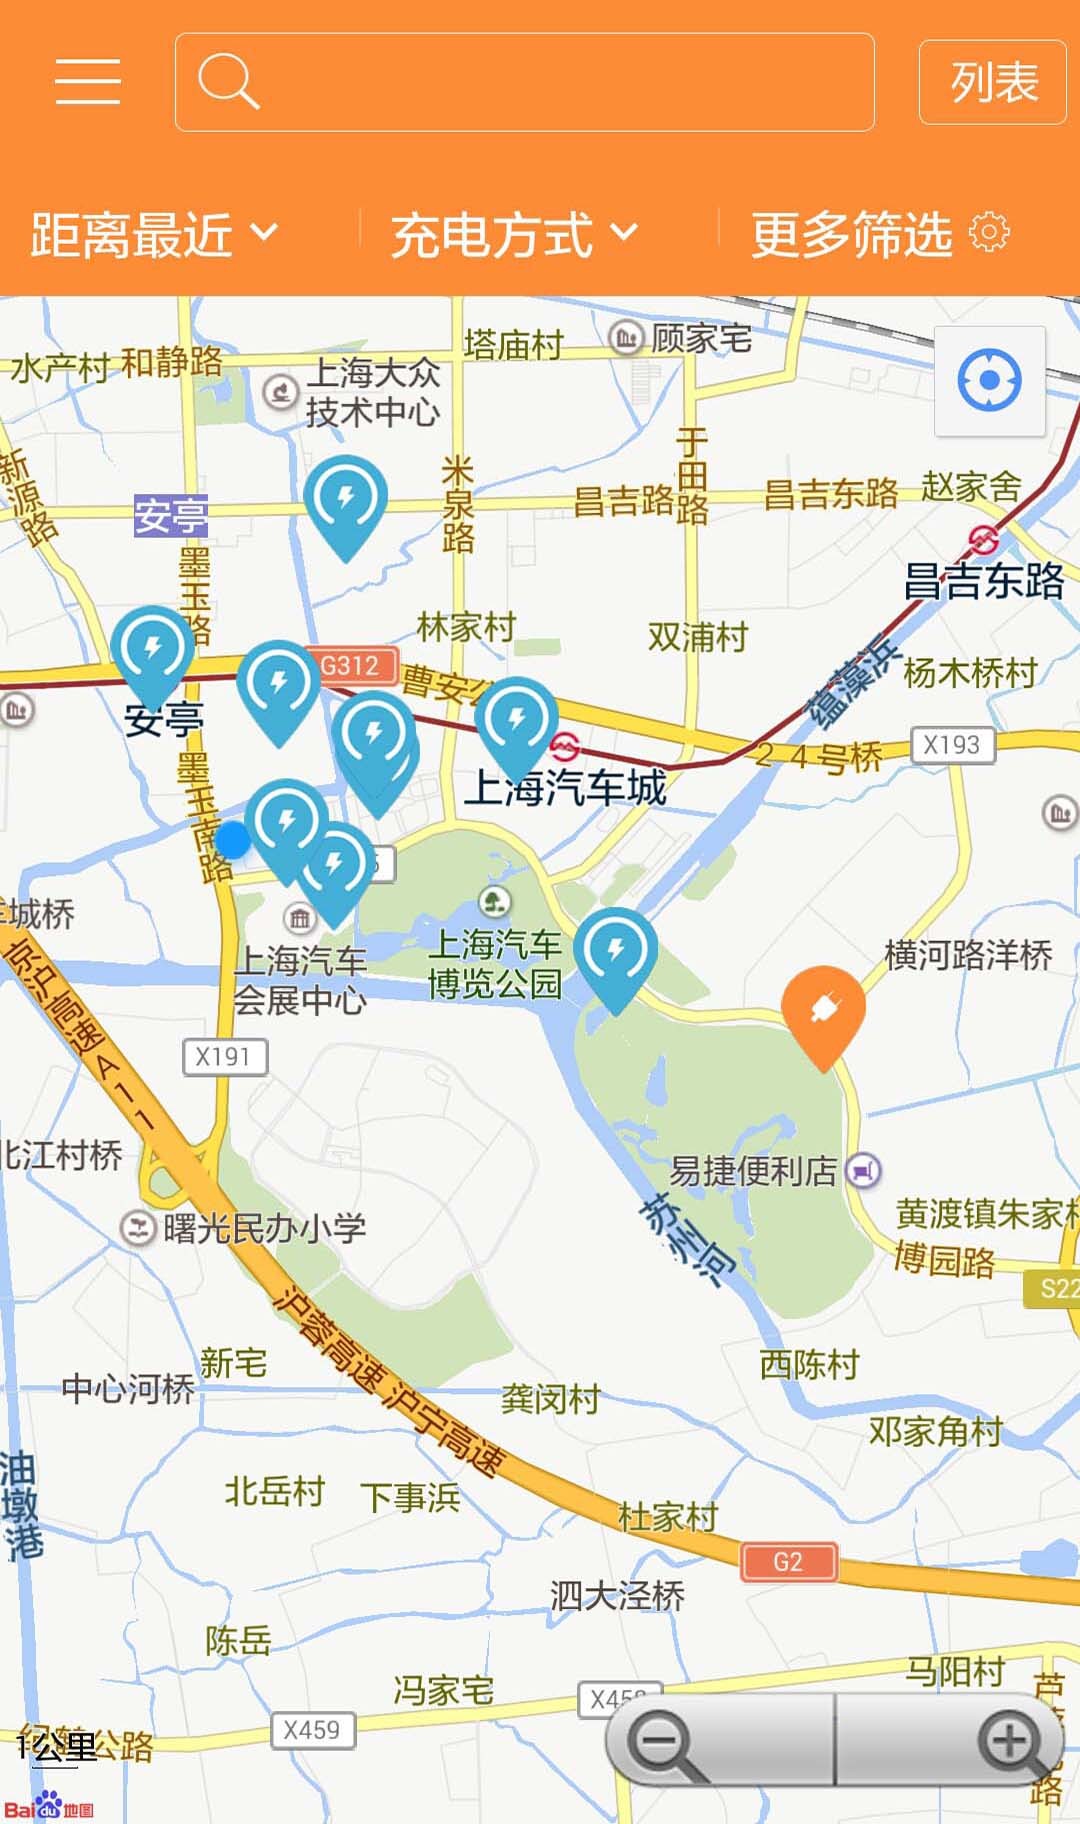 上海充电桩(车易充)